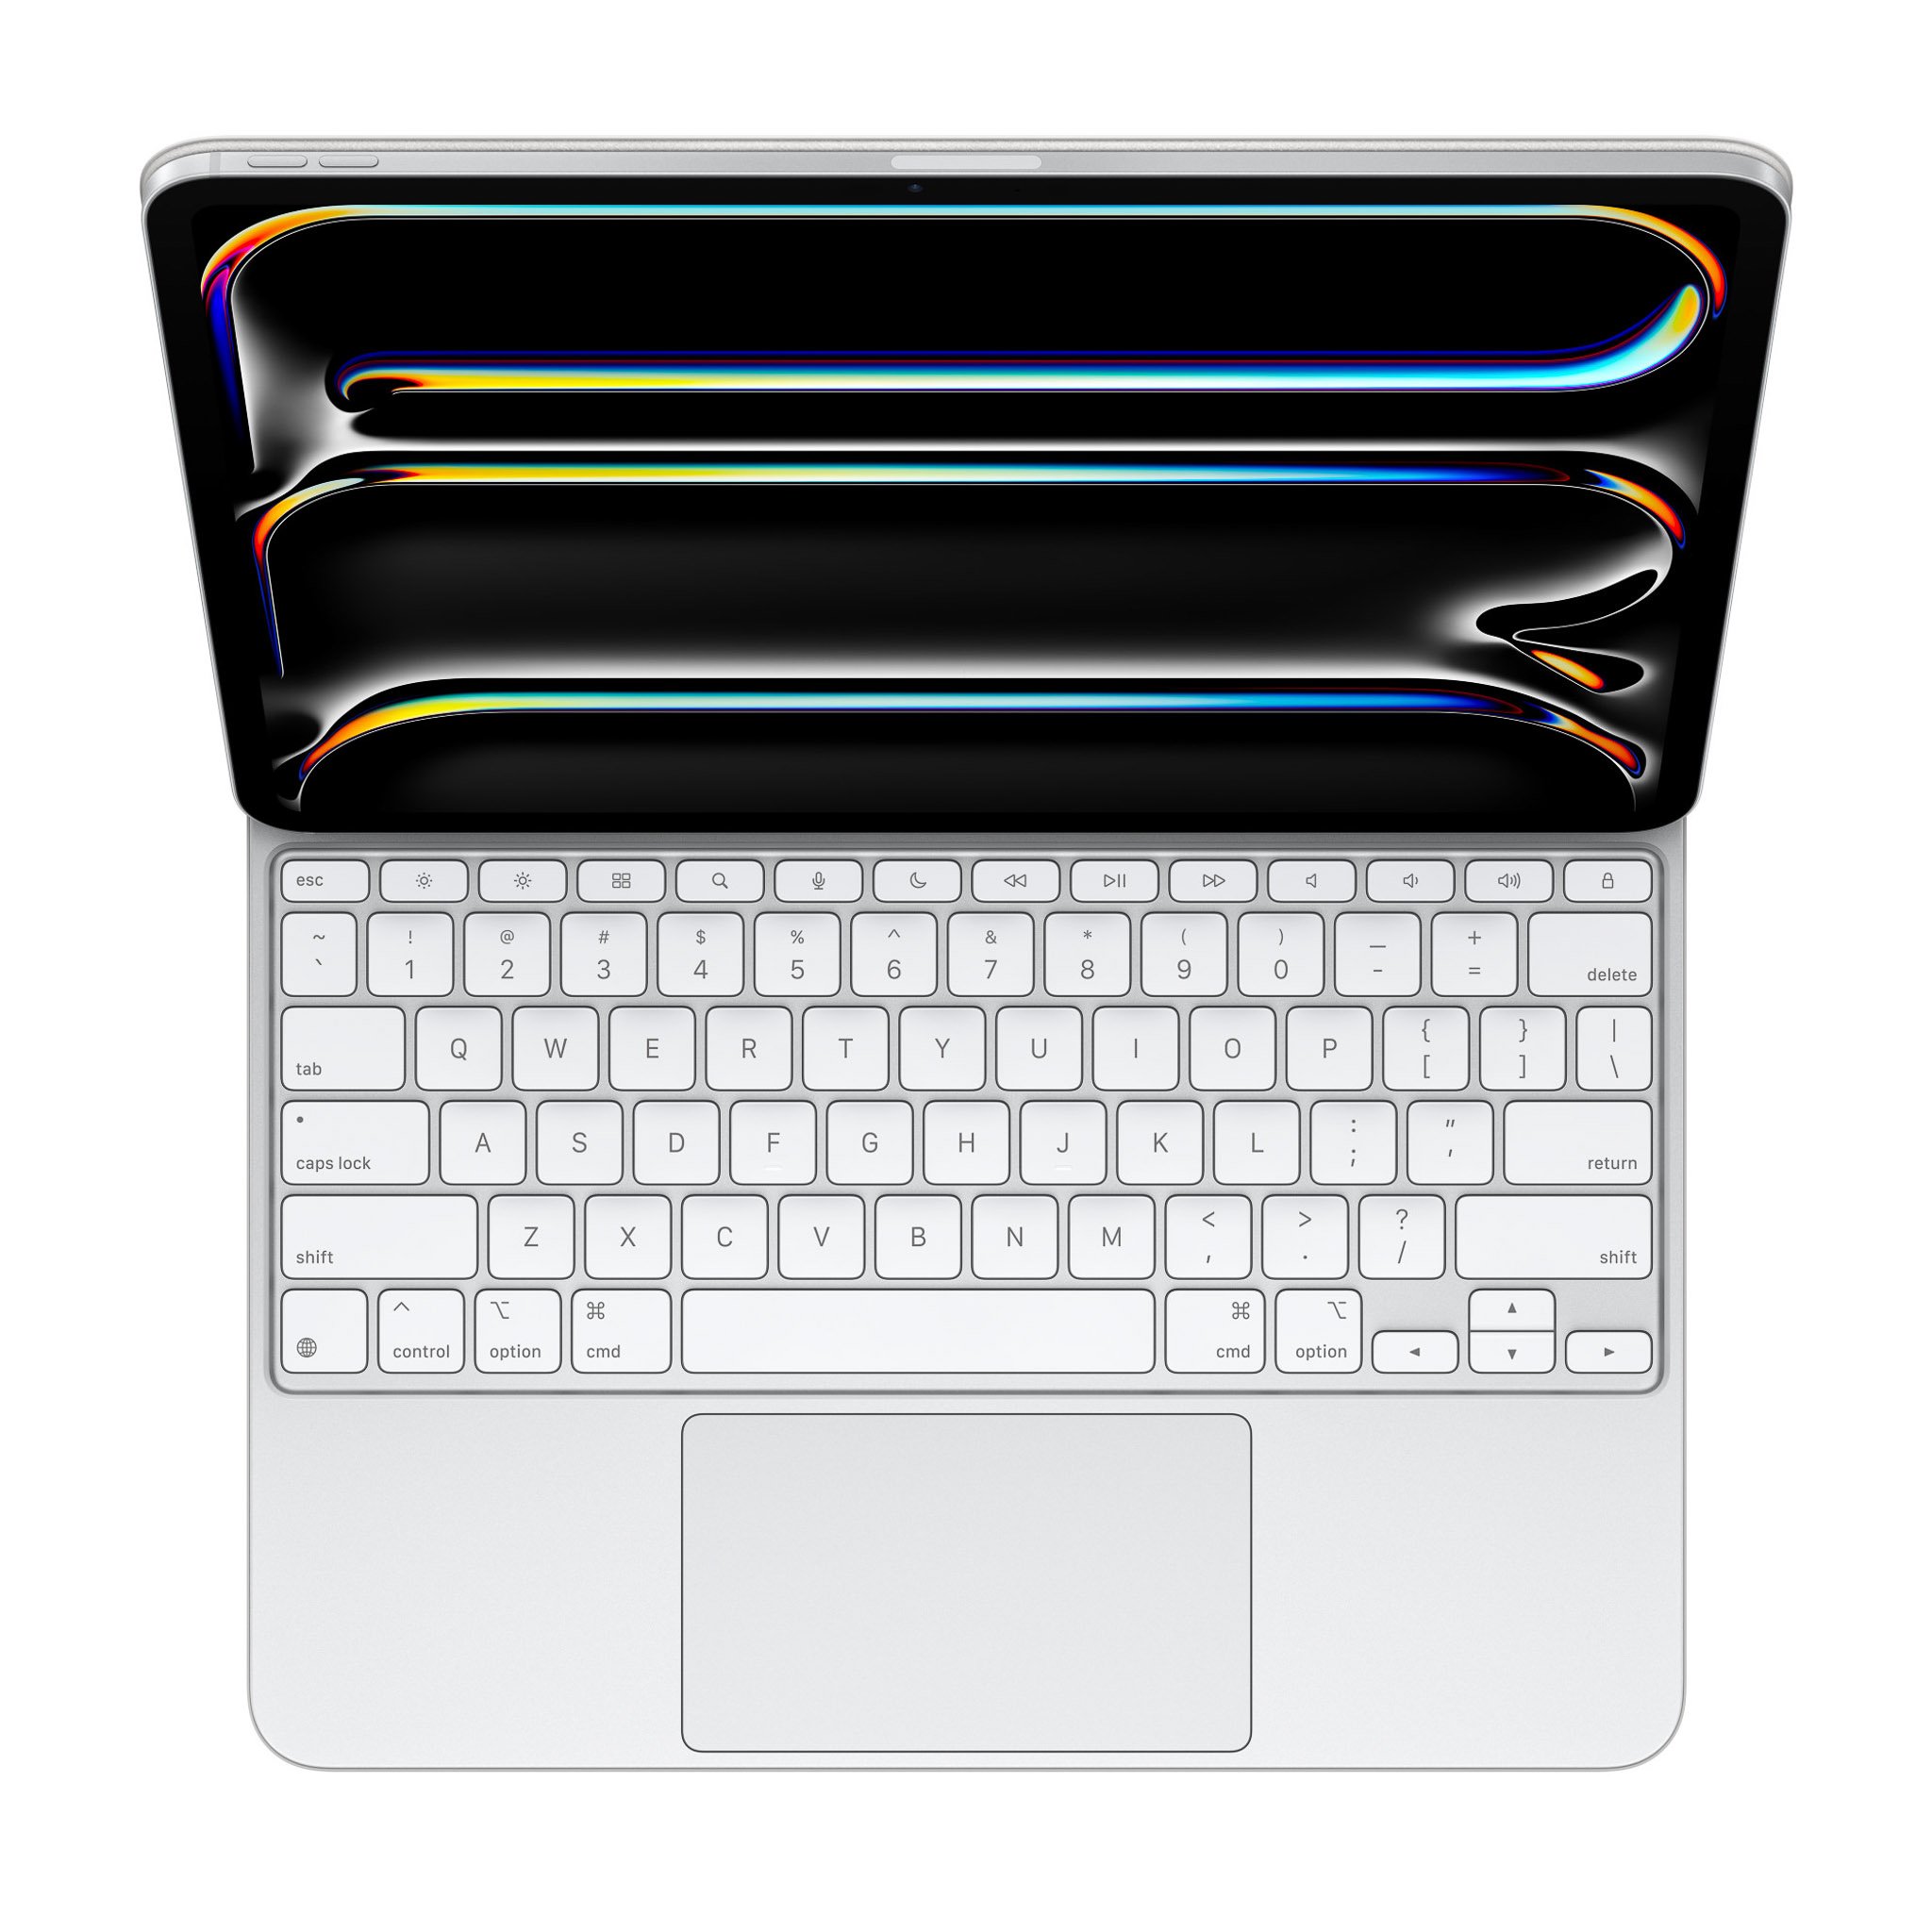 Tinhte-magic-keyboard-iPad-Pro-M4-tinhte-14.jpg